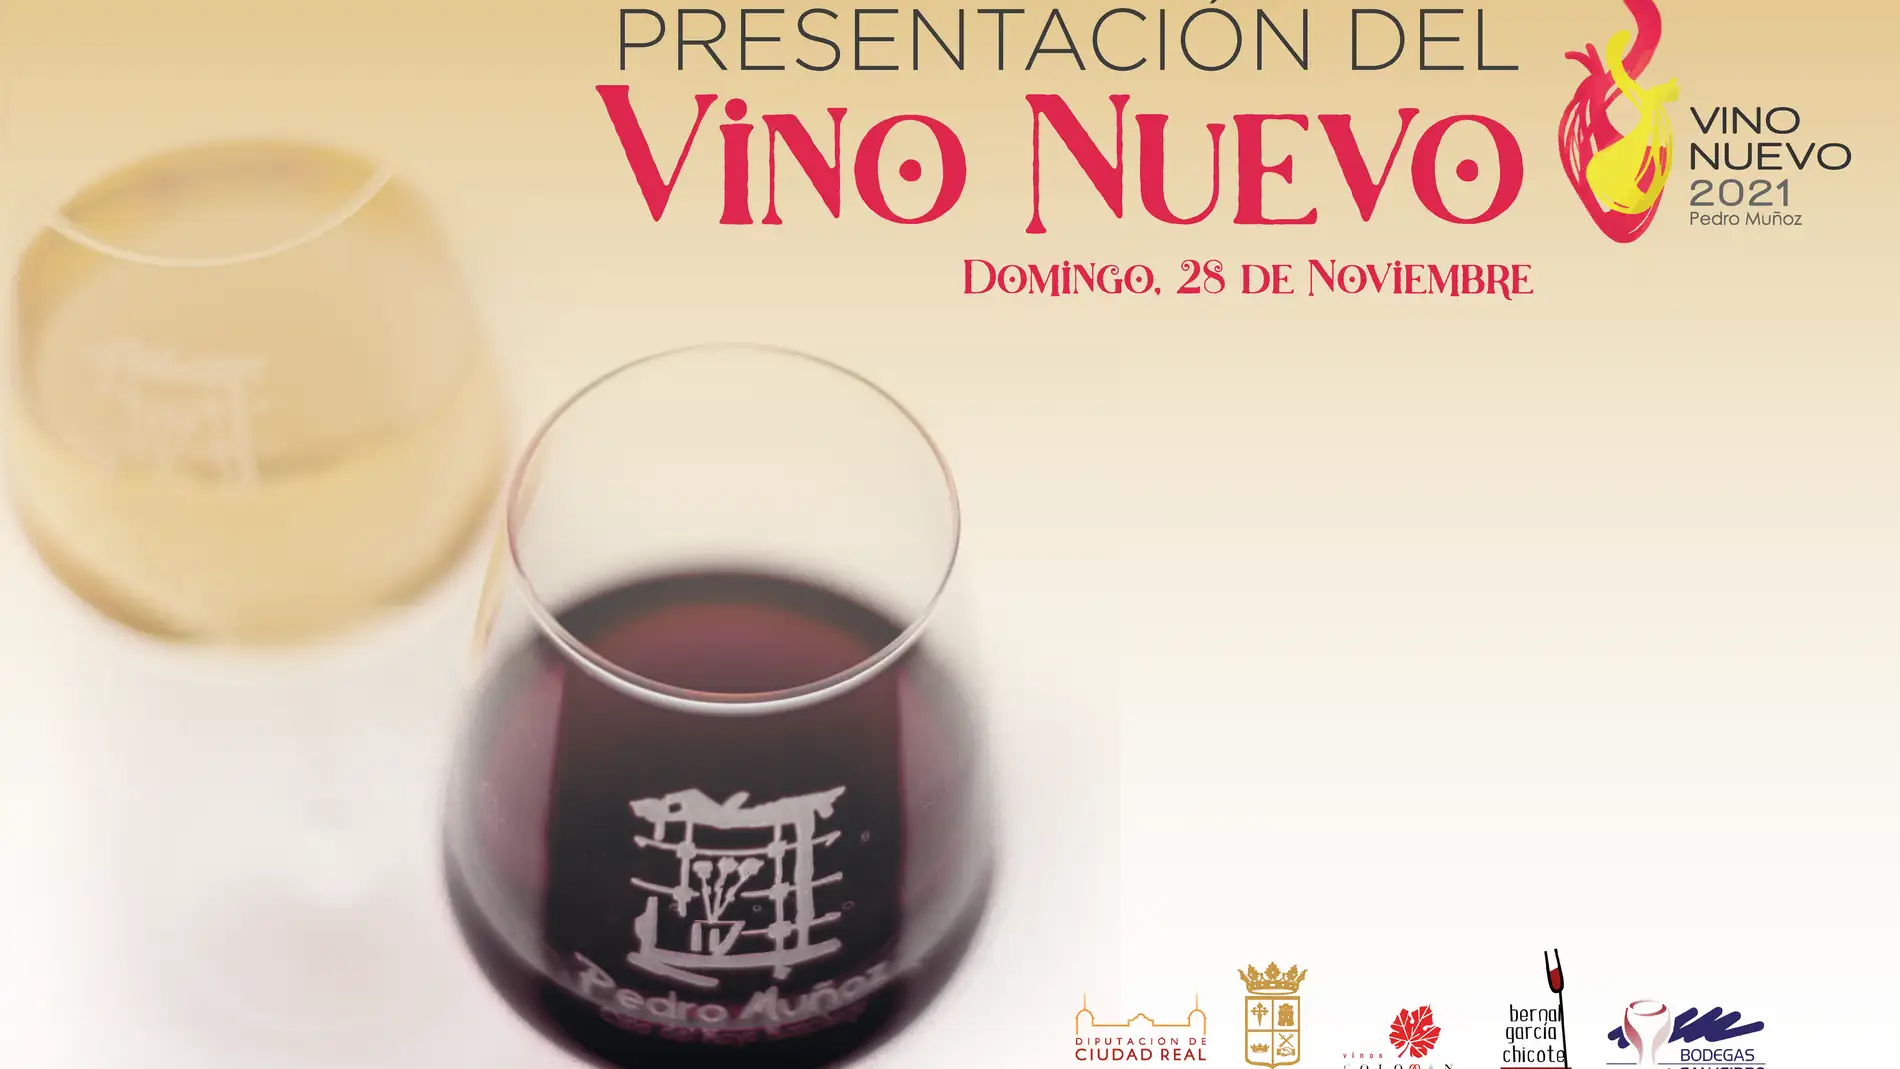 Pedro Muñoz pone de largo sus vinos de la nueva añada